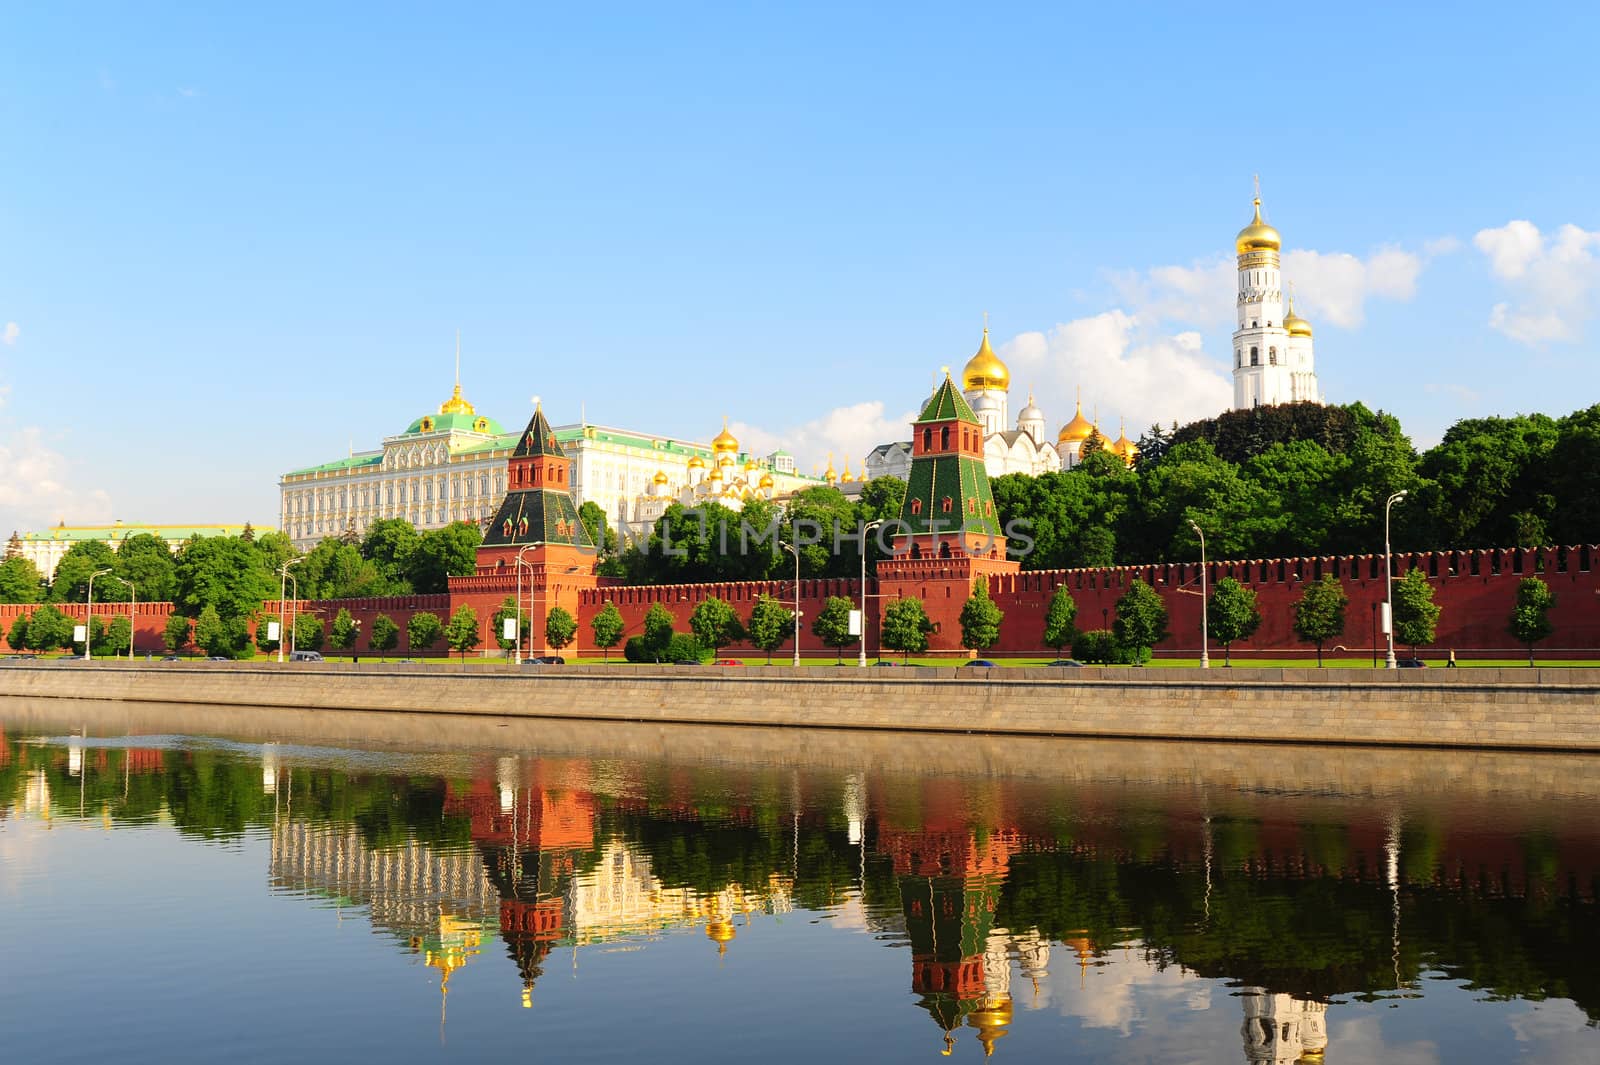 Kremlin by gkuna